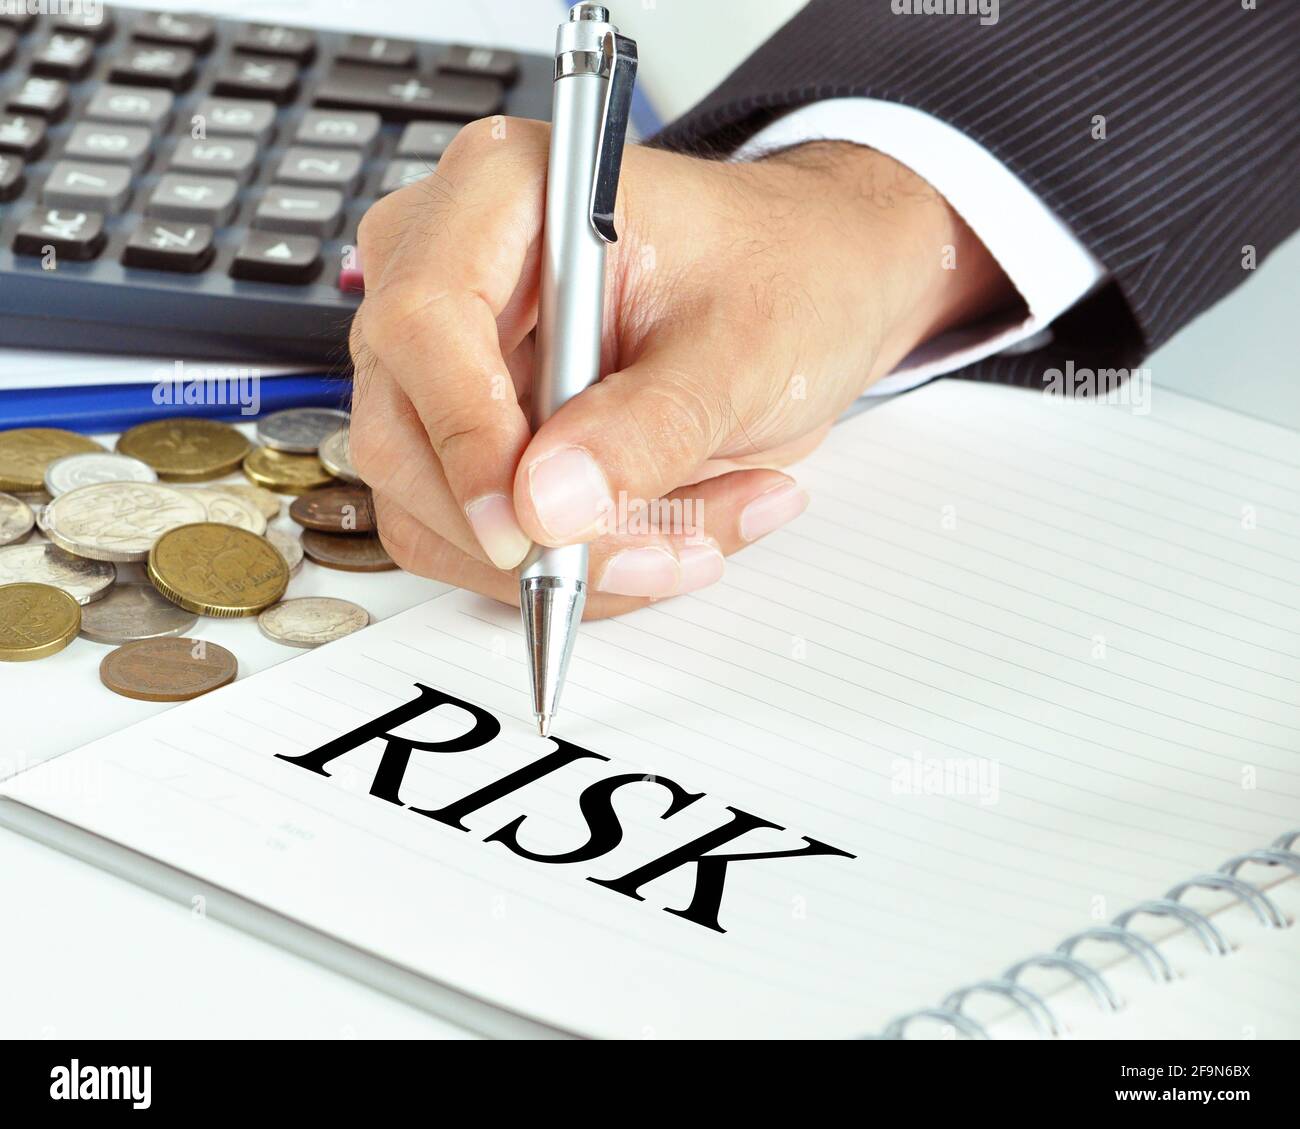 Hand mit Stift, der auf DAS RISIKO-Wort auf dem Papier zeigt - Finanz- und Geschäftskonzept Stockfoto